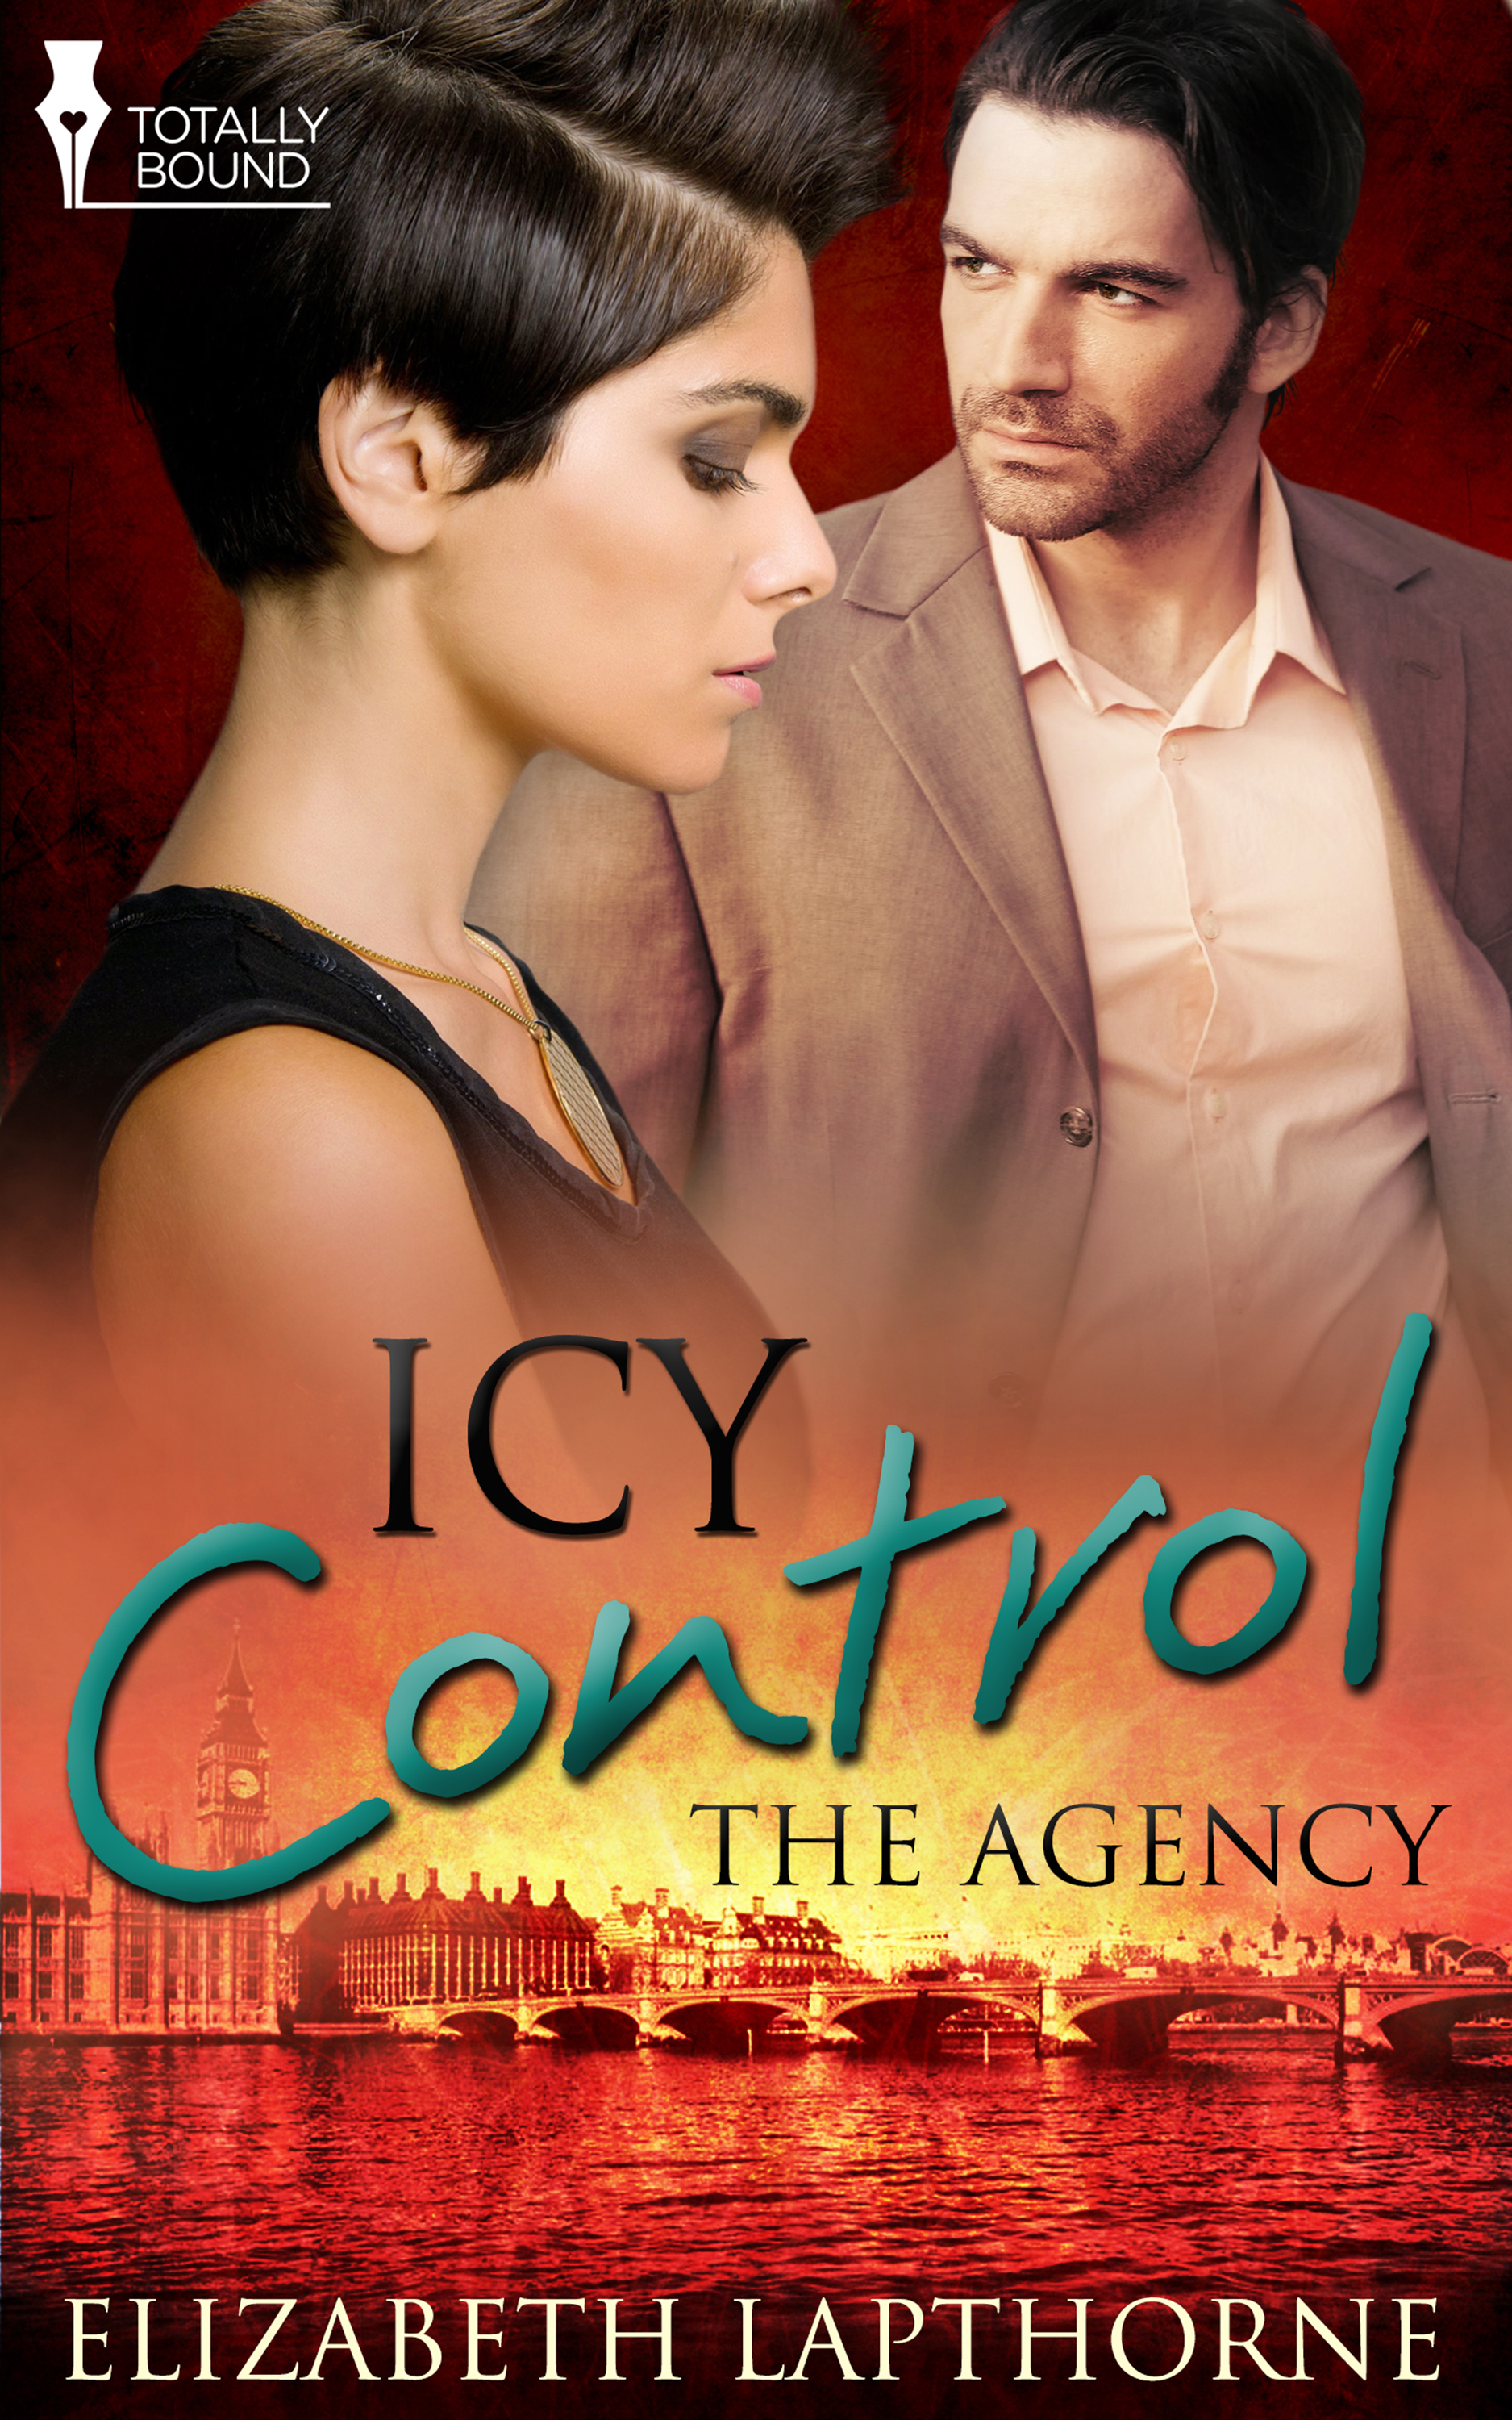 Icy Control (2014) by Elizabeth Lapthorne